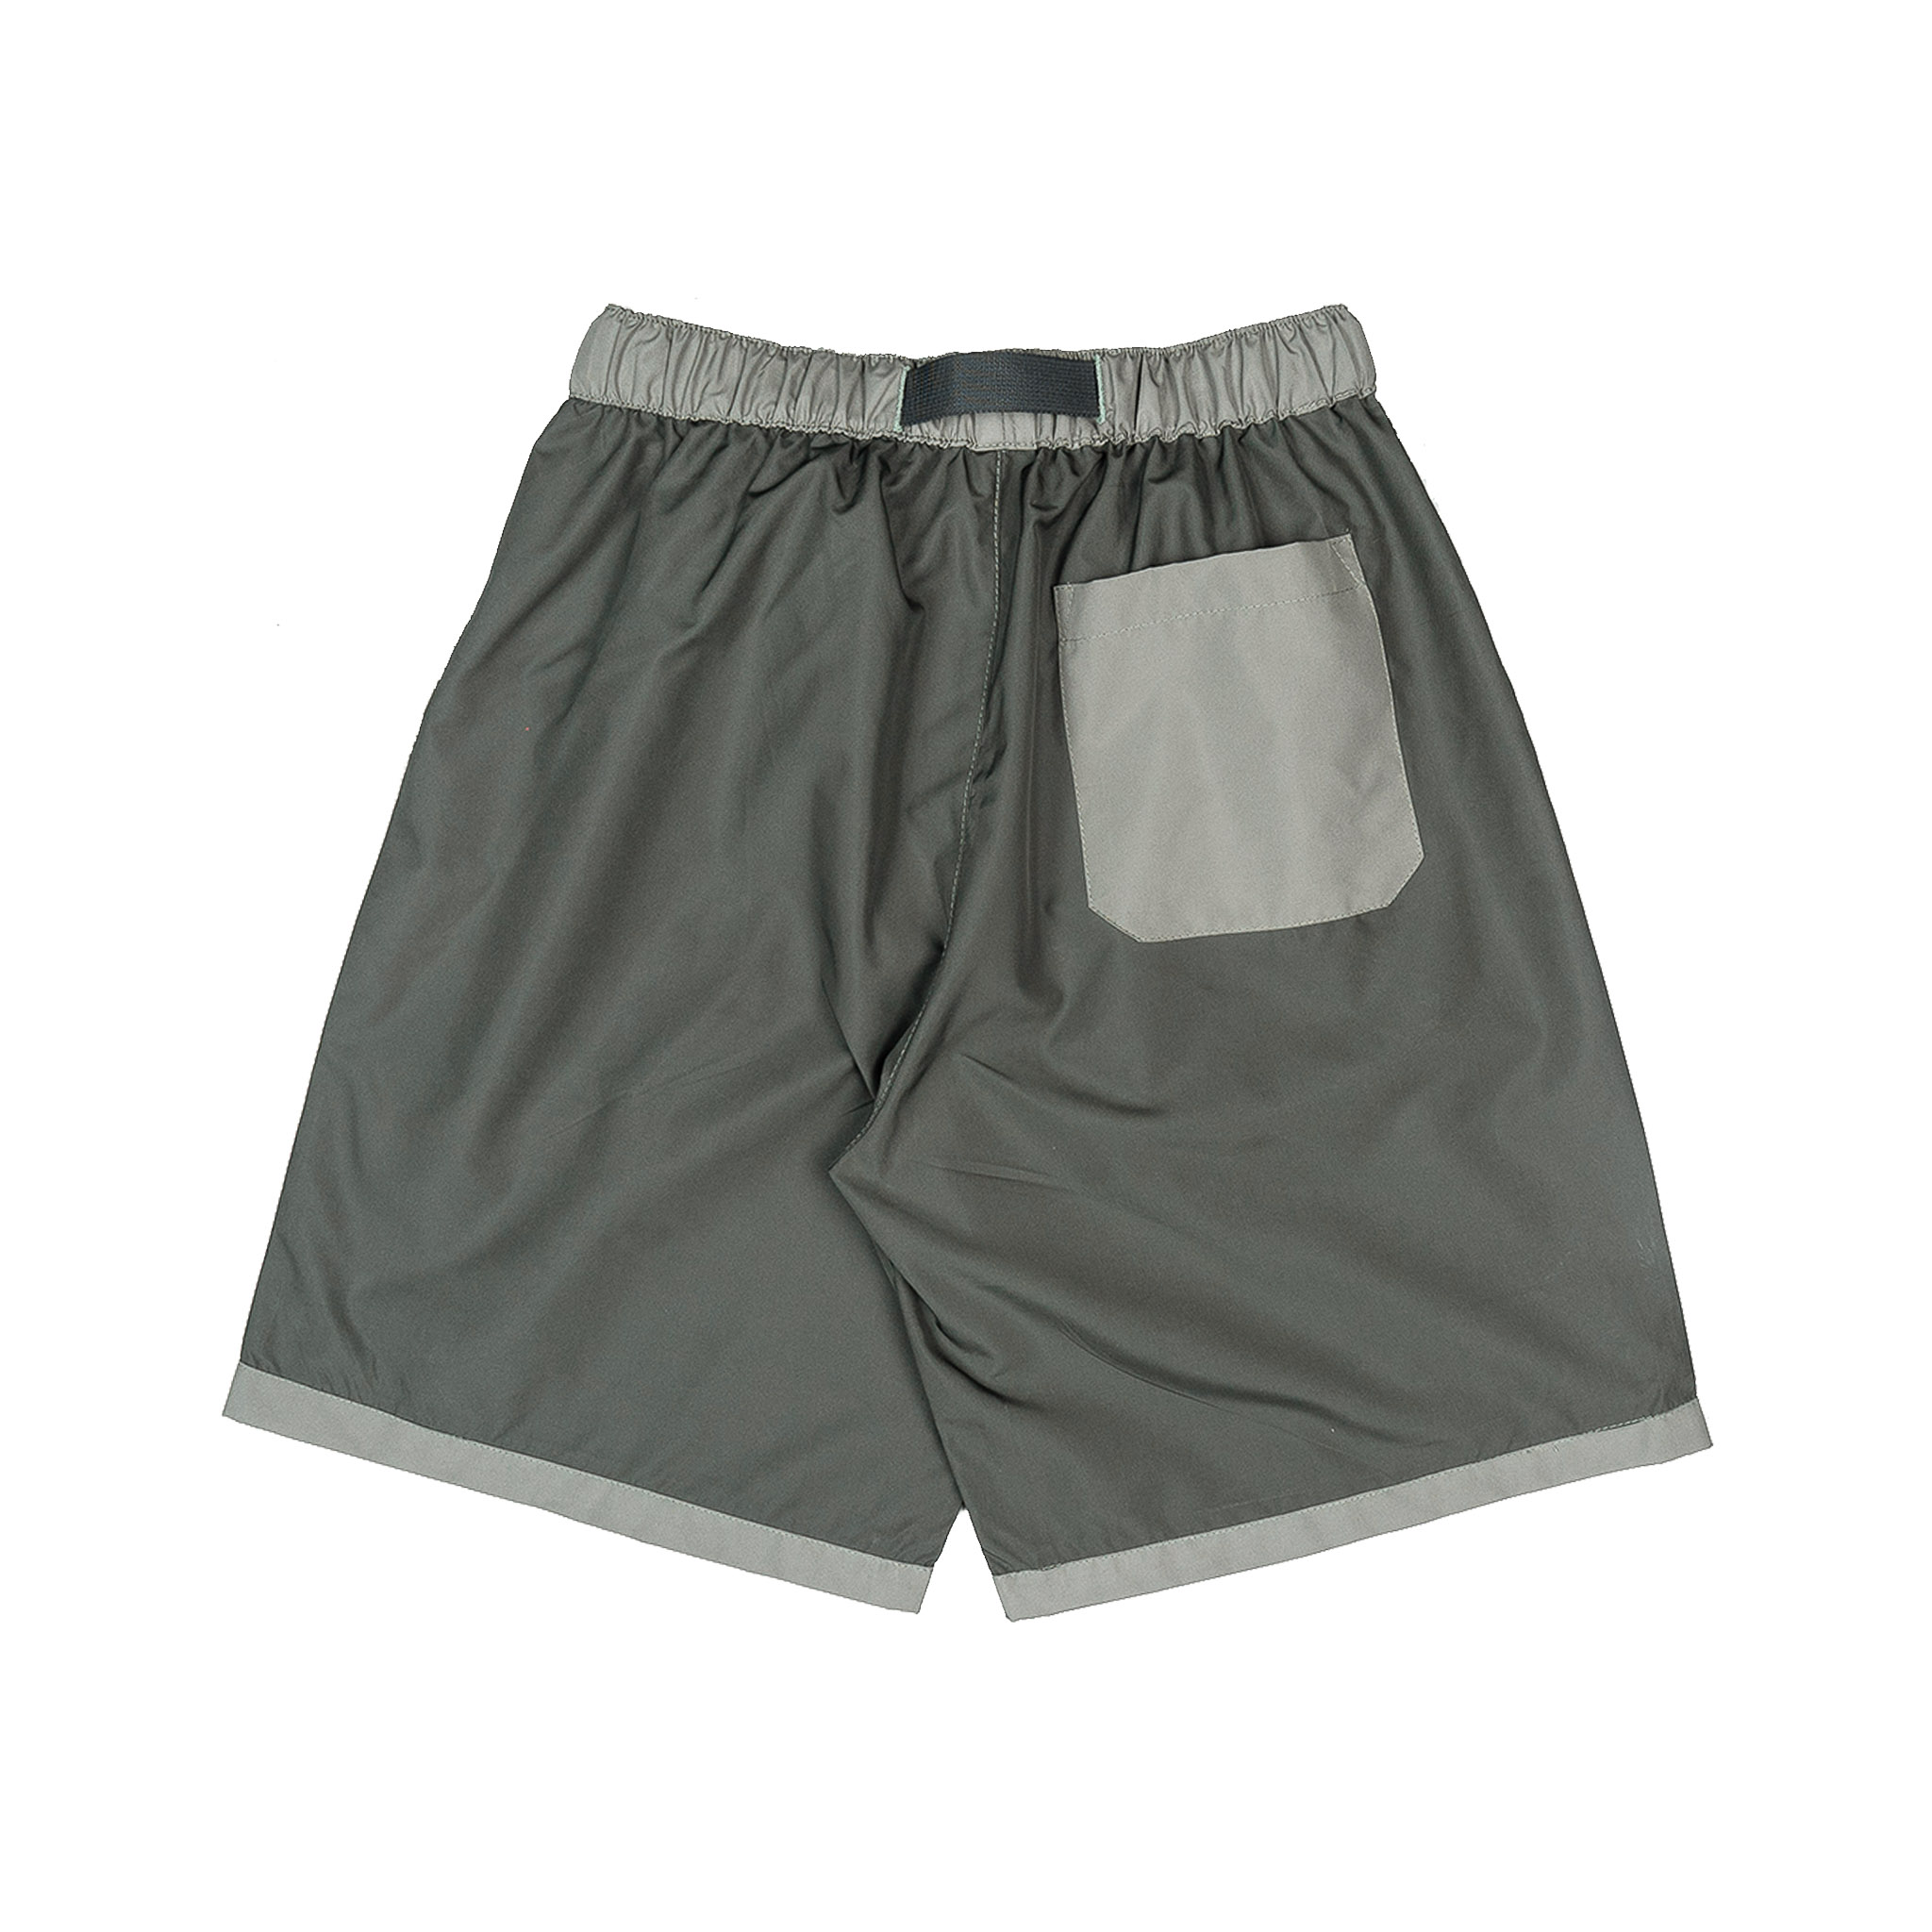 hoya fields board shorts